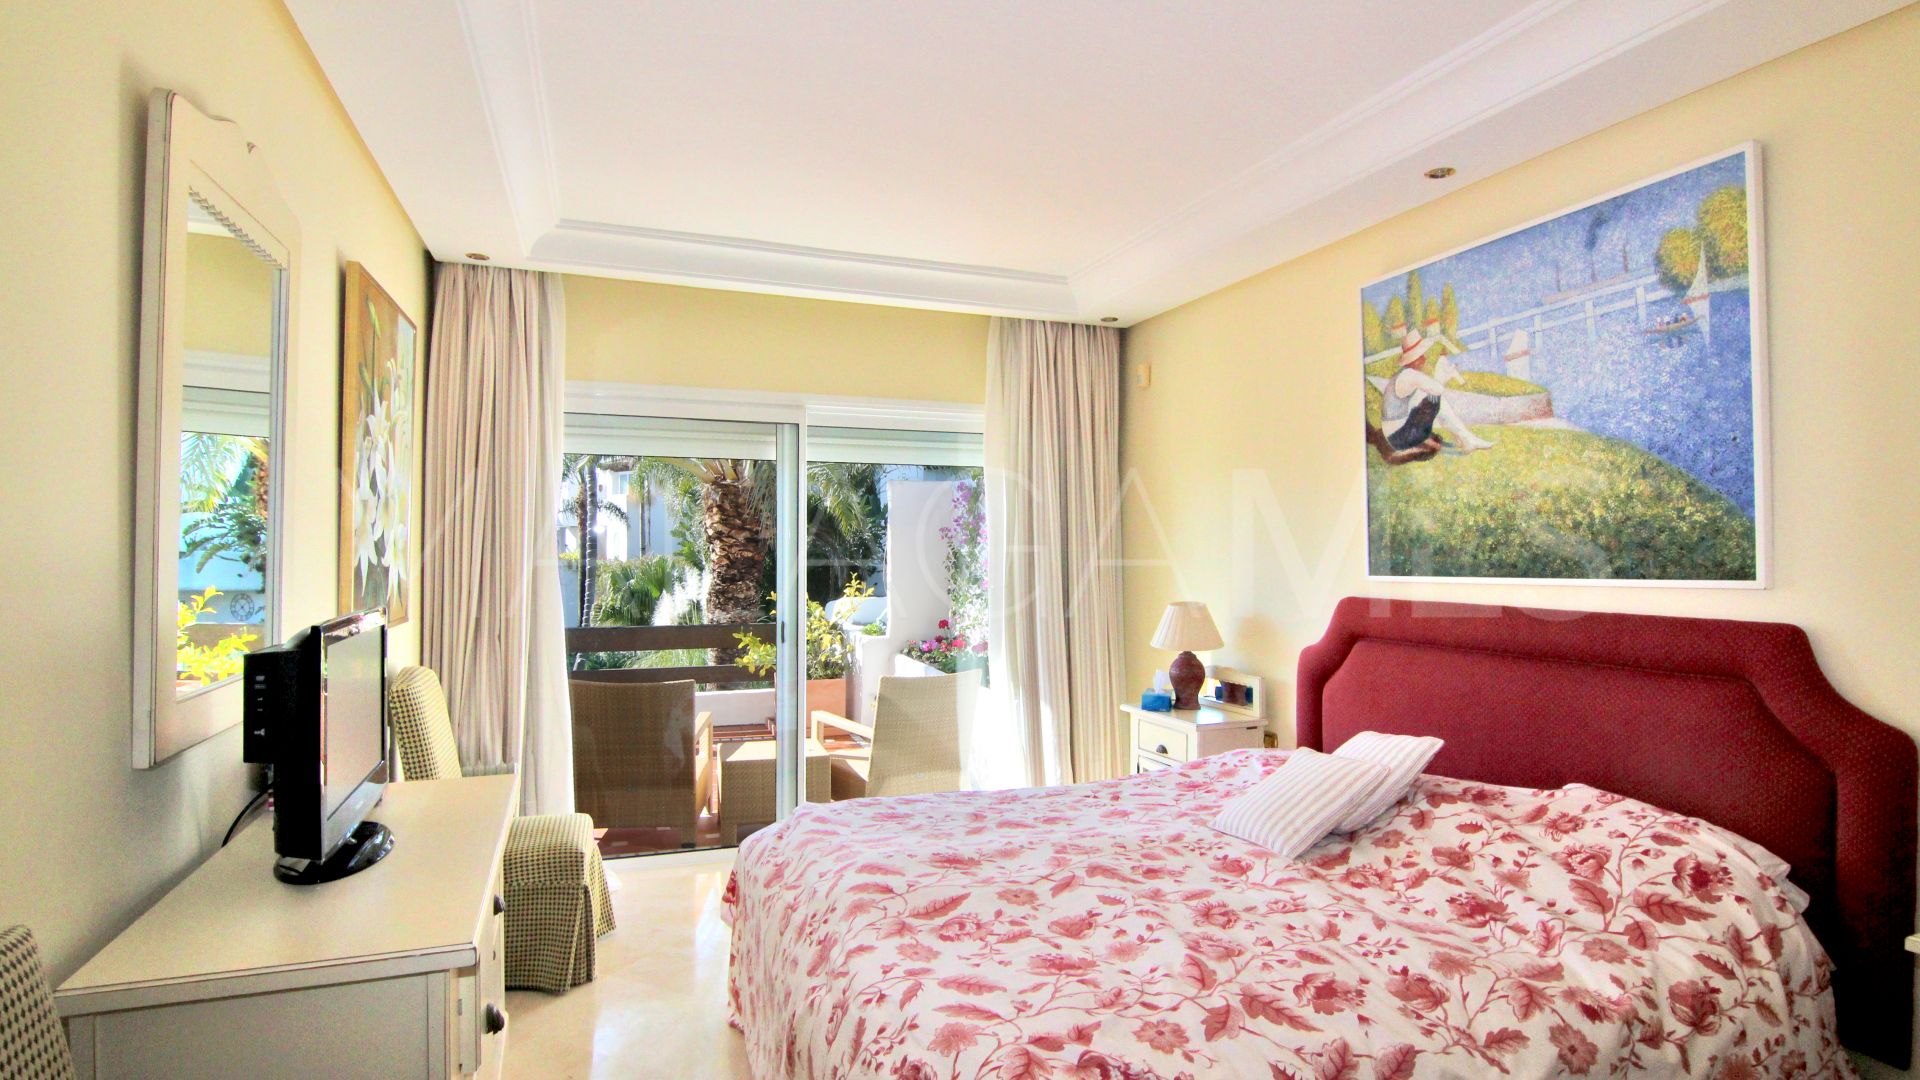 Atico a la venta in Ventura del Mar with 5 bedrooms